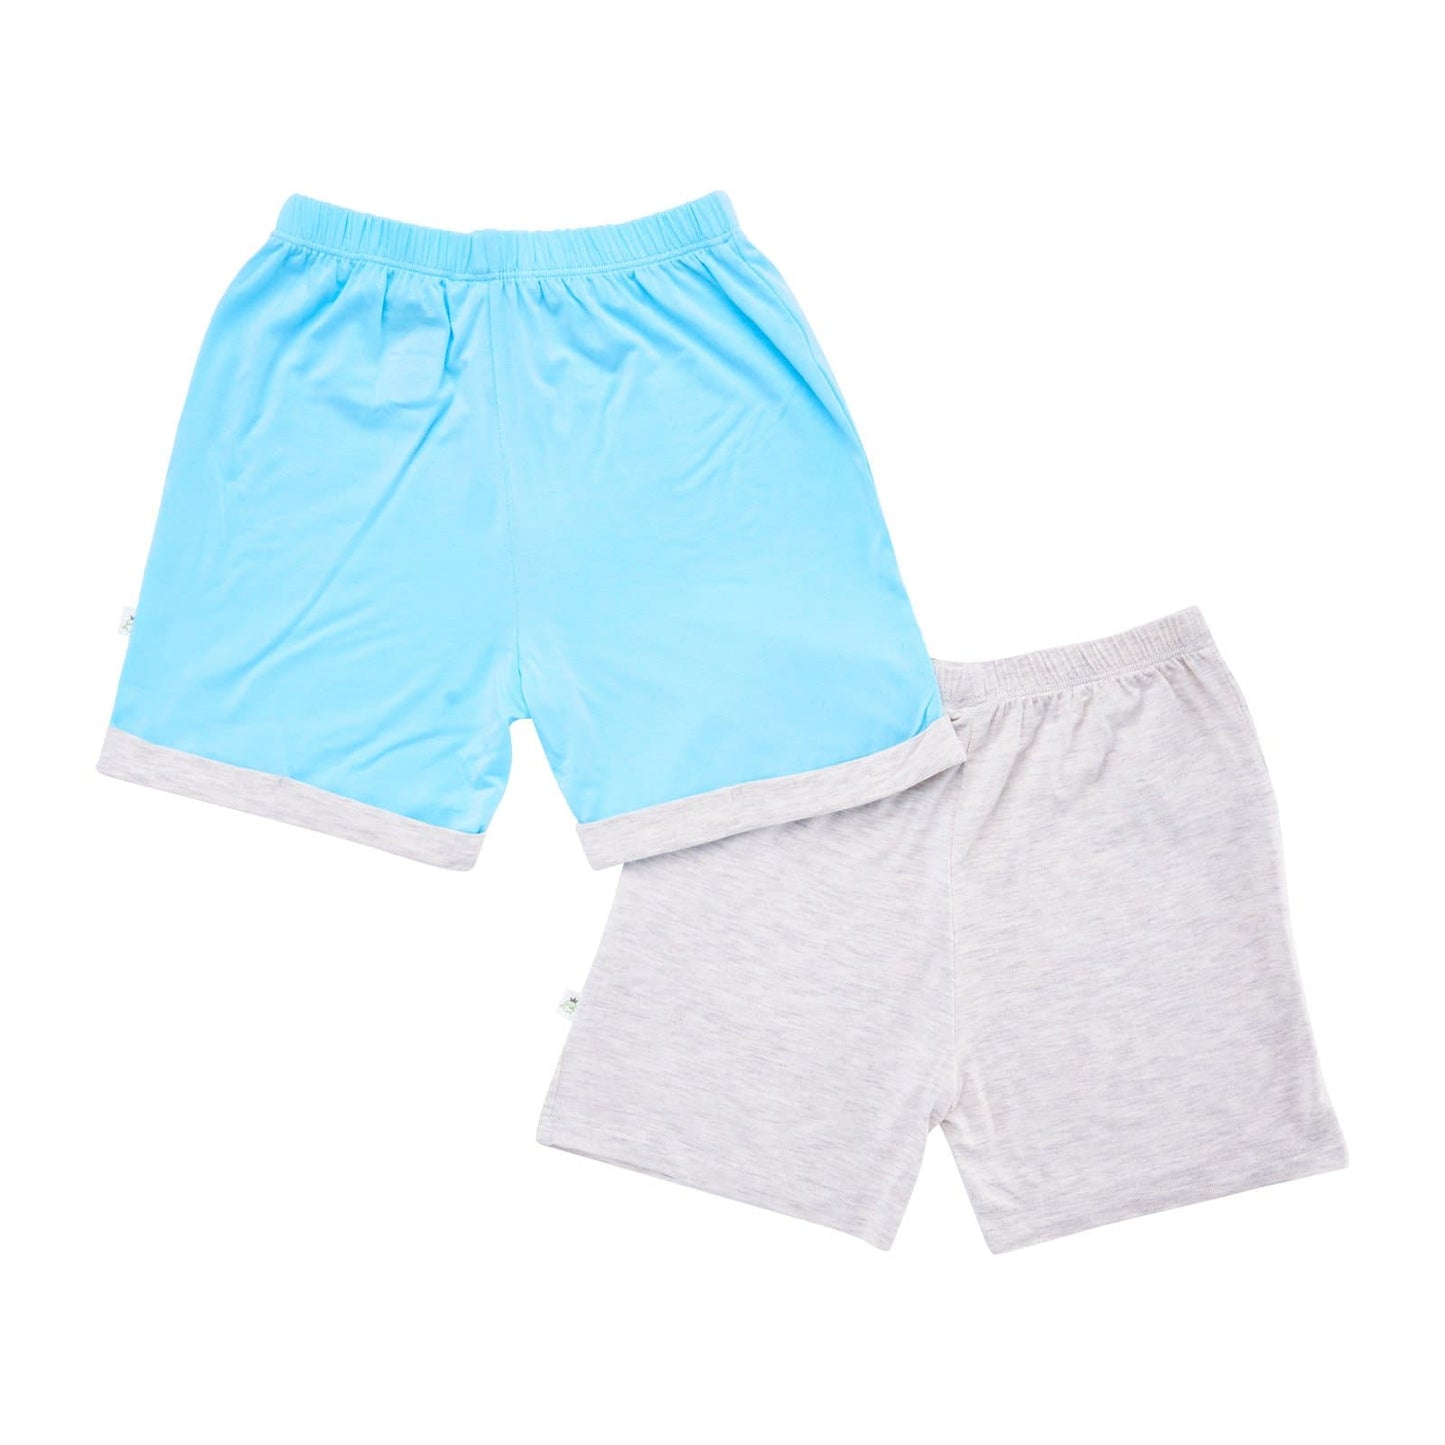 Boys - Shorts with Mocked Pocket/Drawstring (Sandwash Grey & Turquoise)